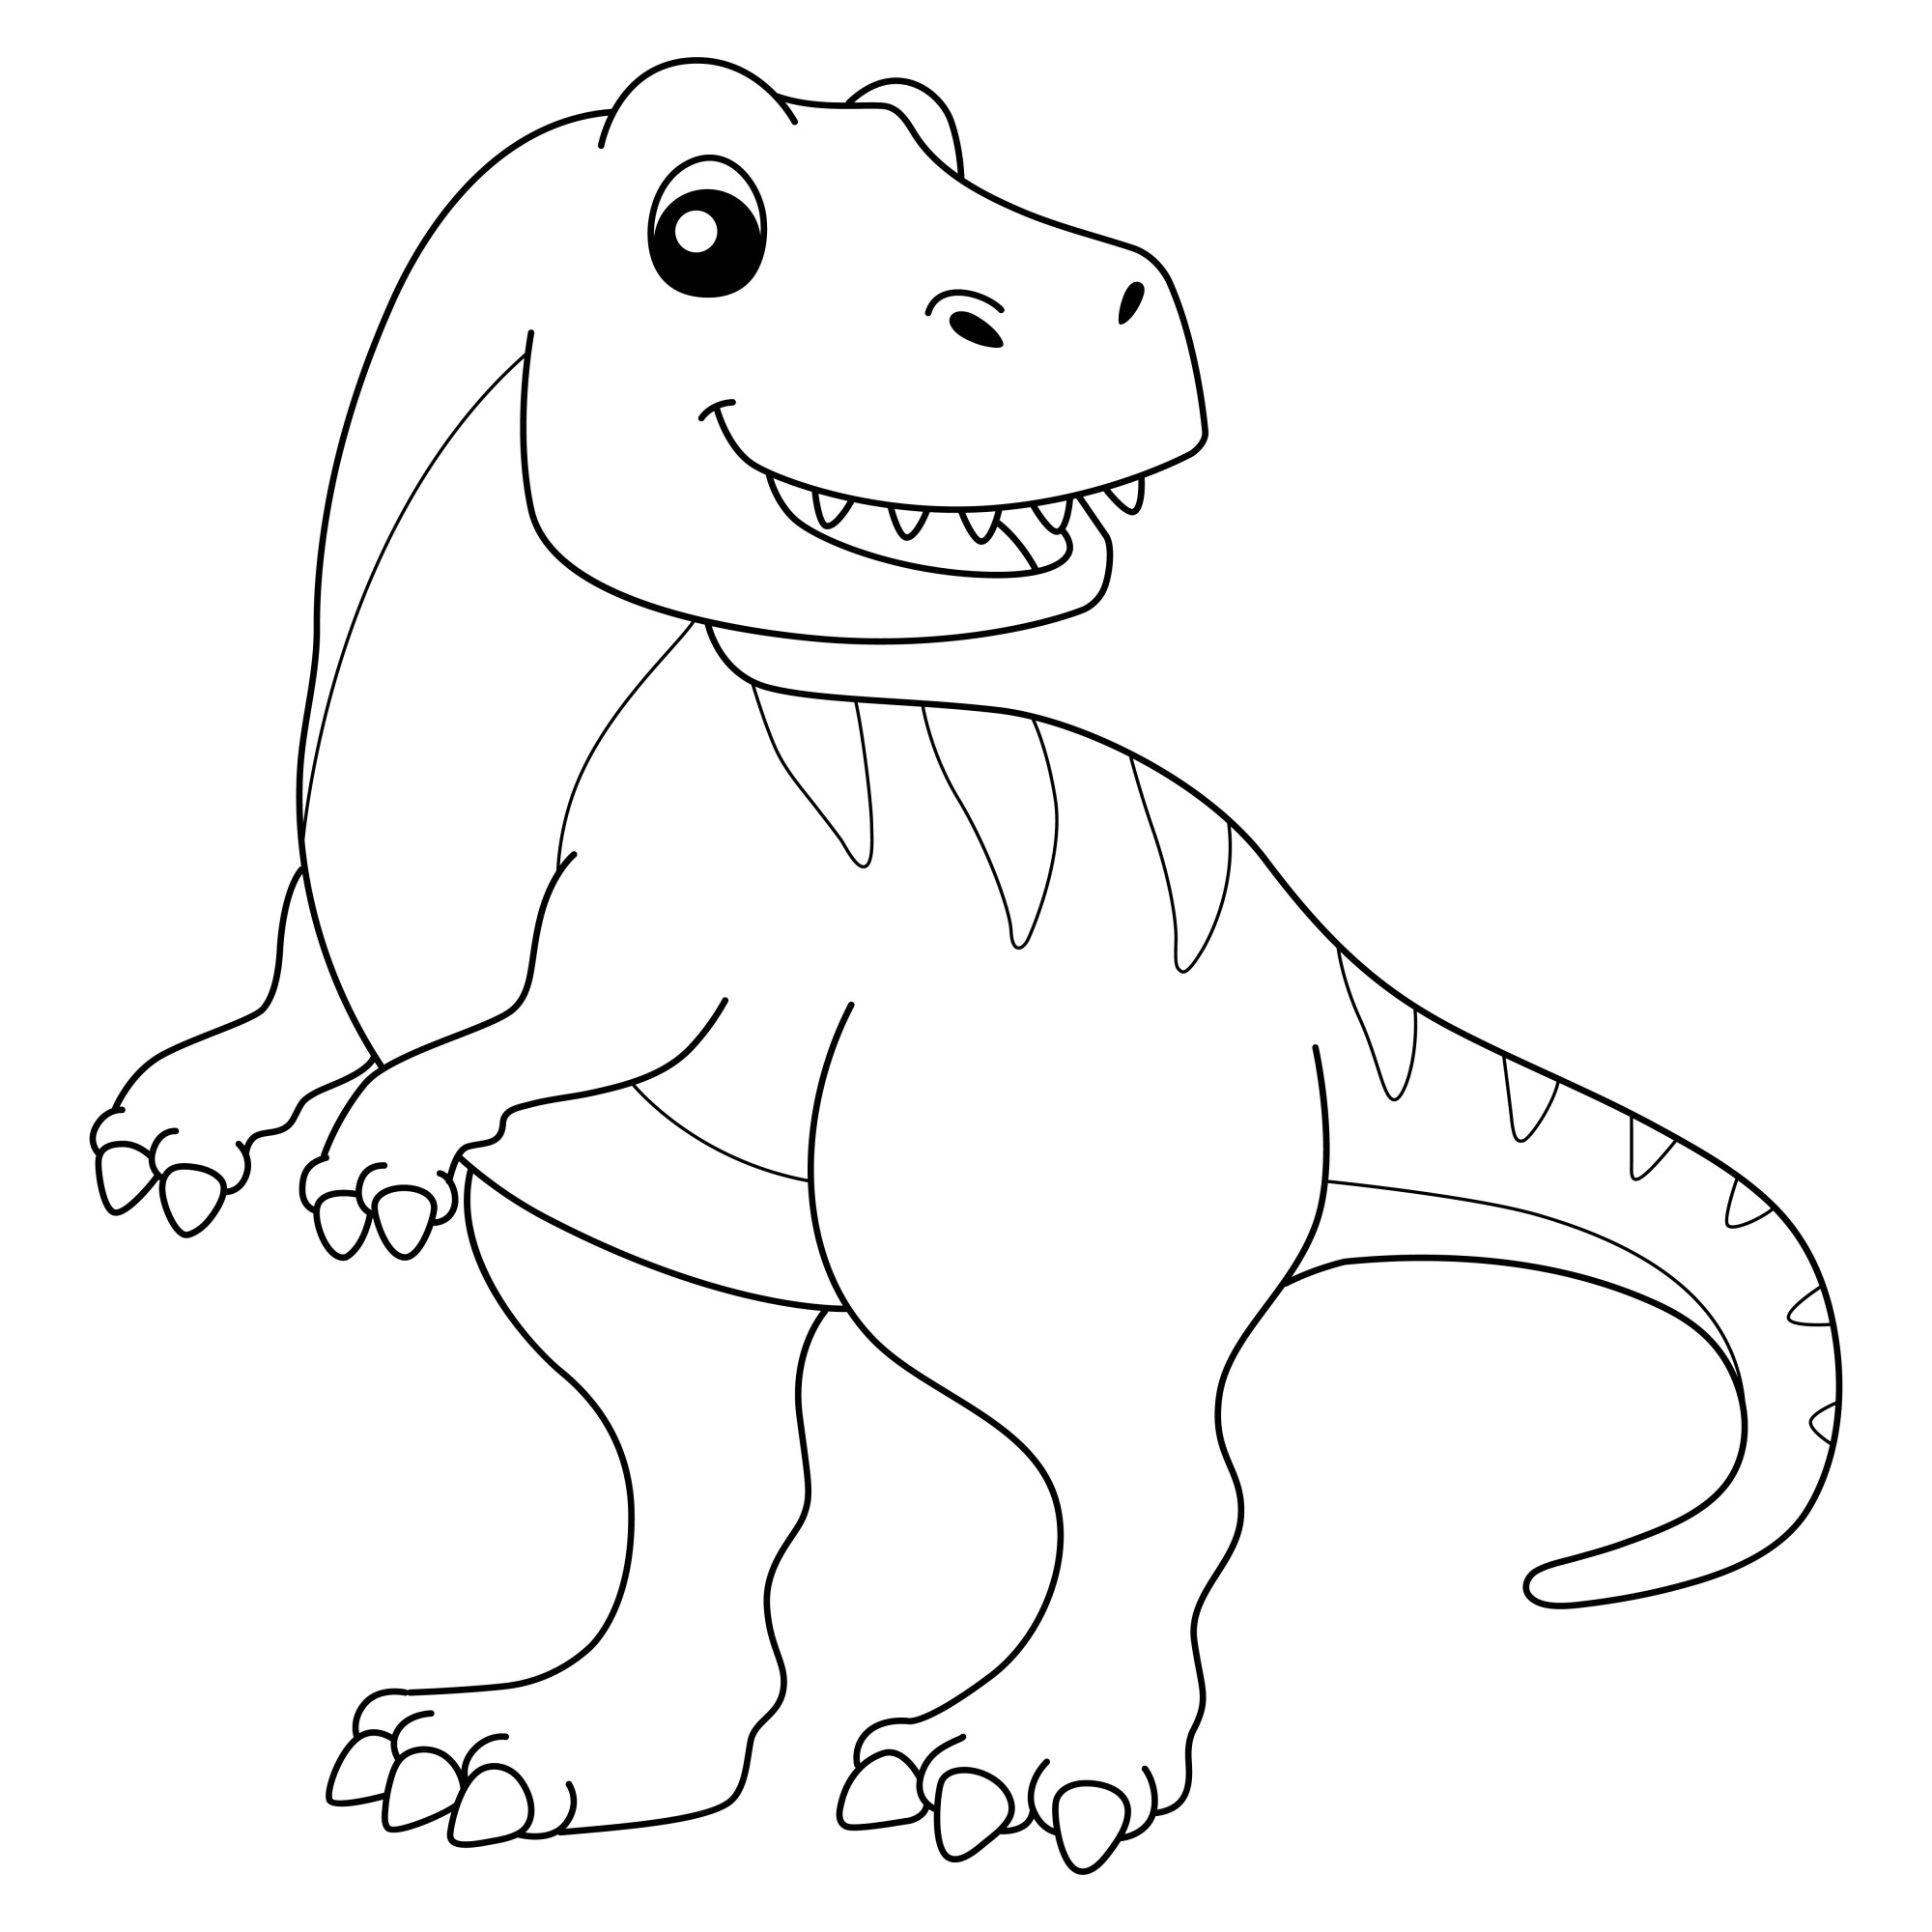 Раскраска для детей: тираннозавр Тирекс